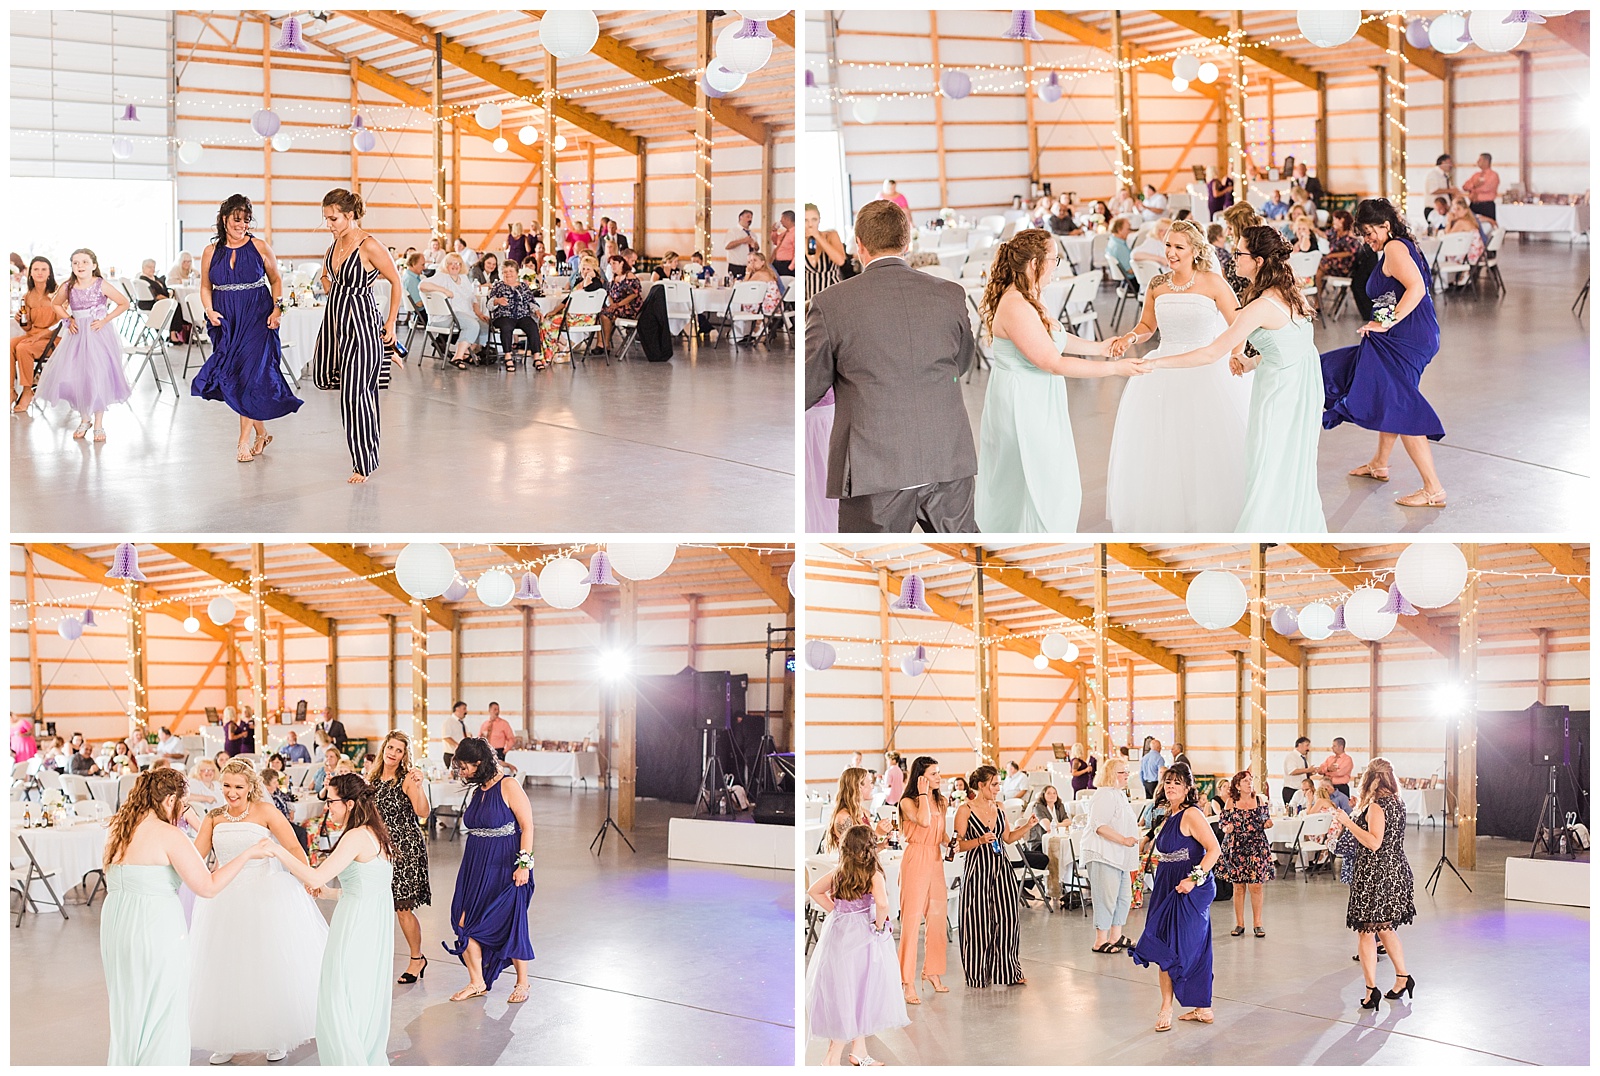 Reception dancing at a Michigan Orchard Wedding